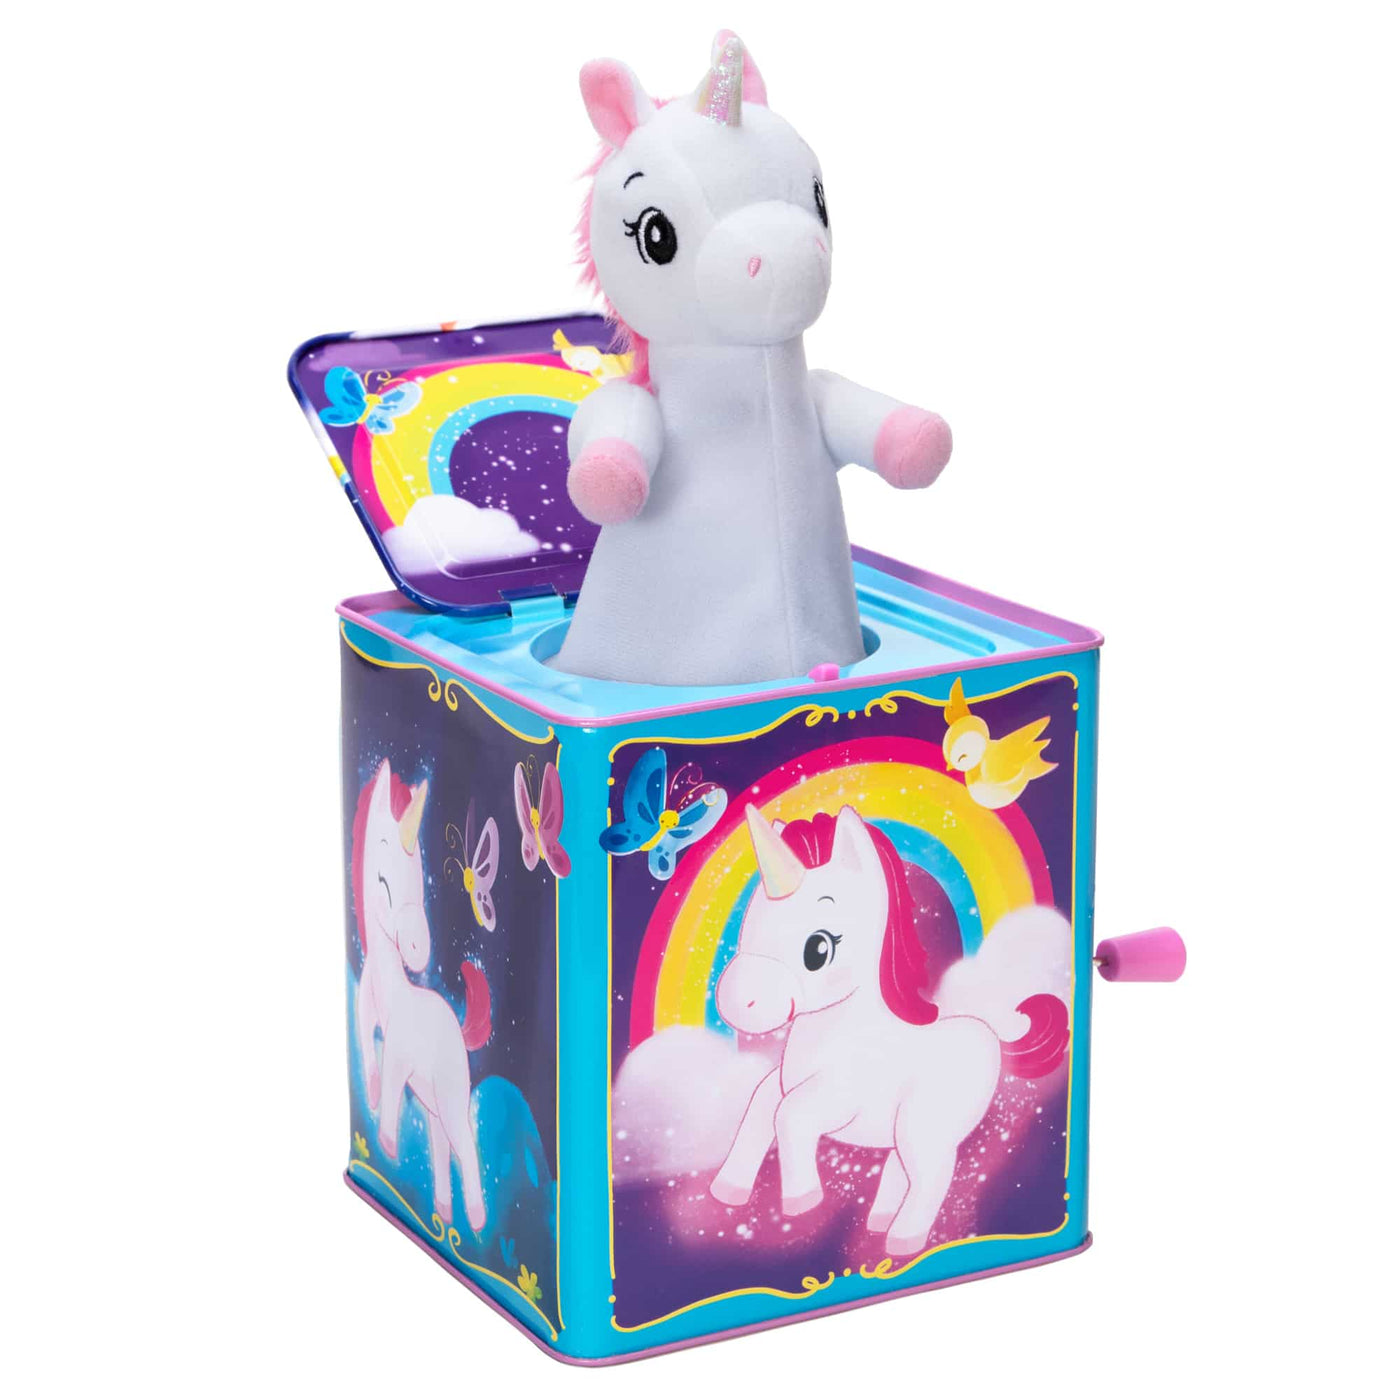 Unicorn Pop & Glow Jack-in-the-Box